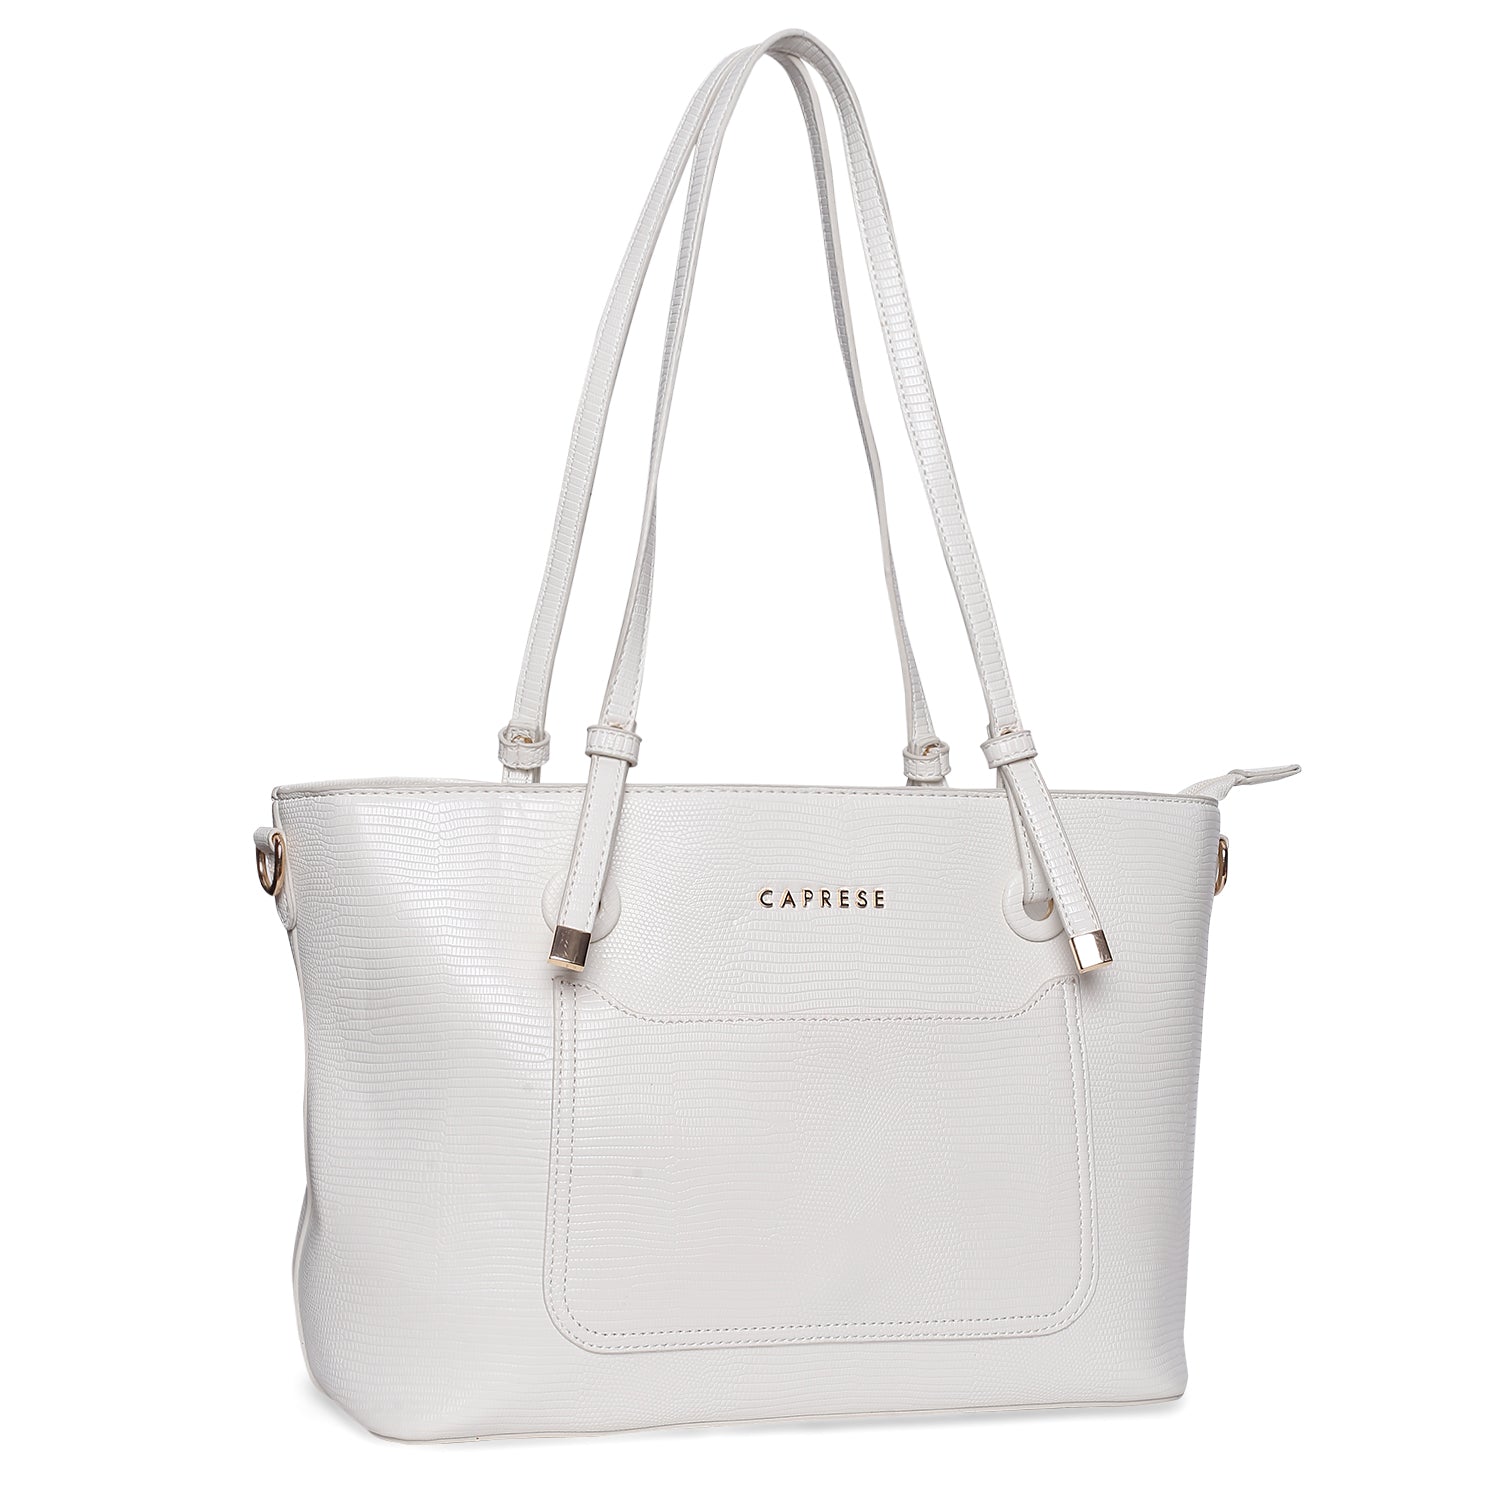 Buy Da Milano Women White Shoulder Bag WHITE Online @ Best Price in India |  Flipkart.com